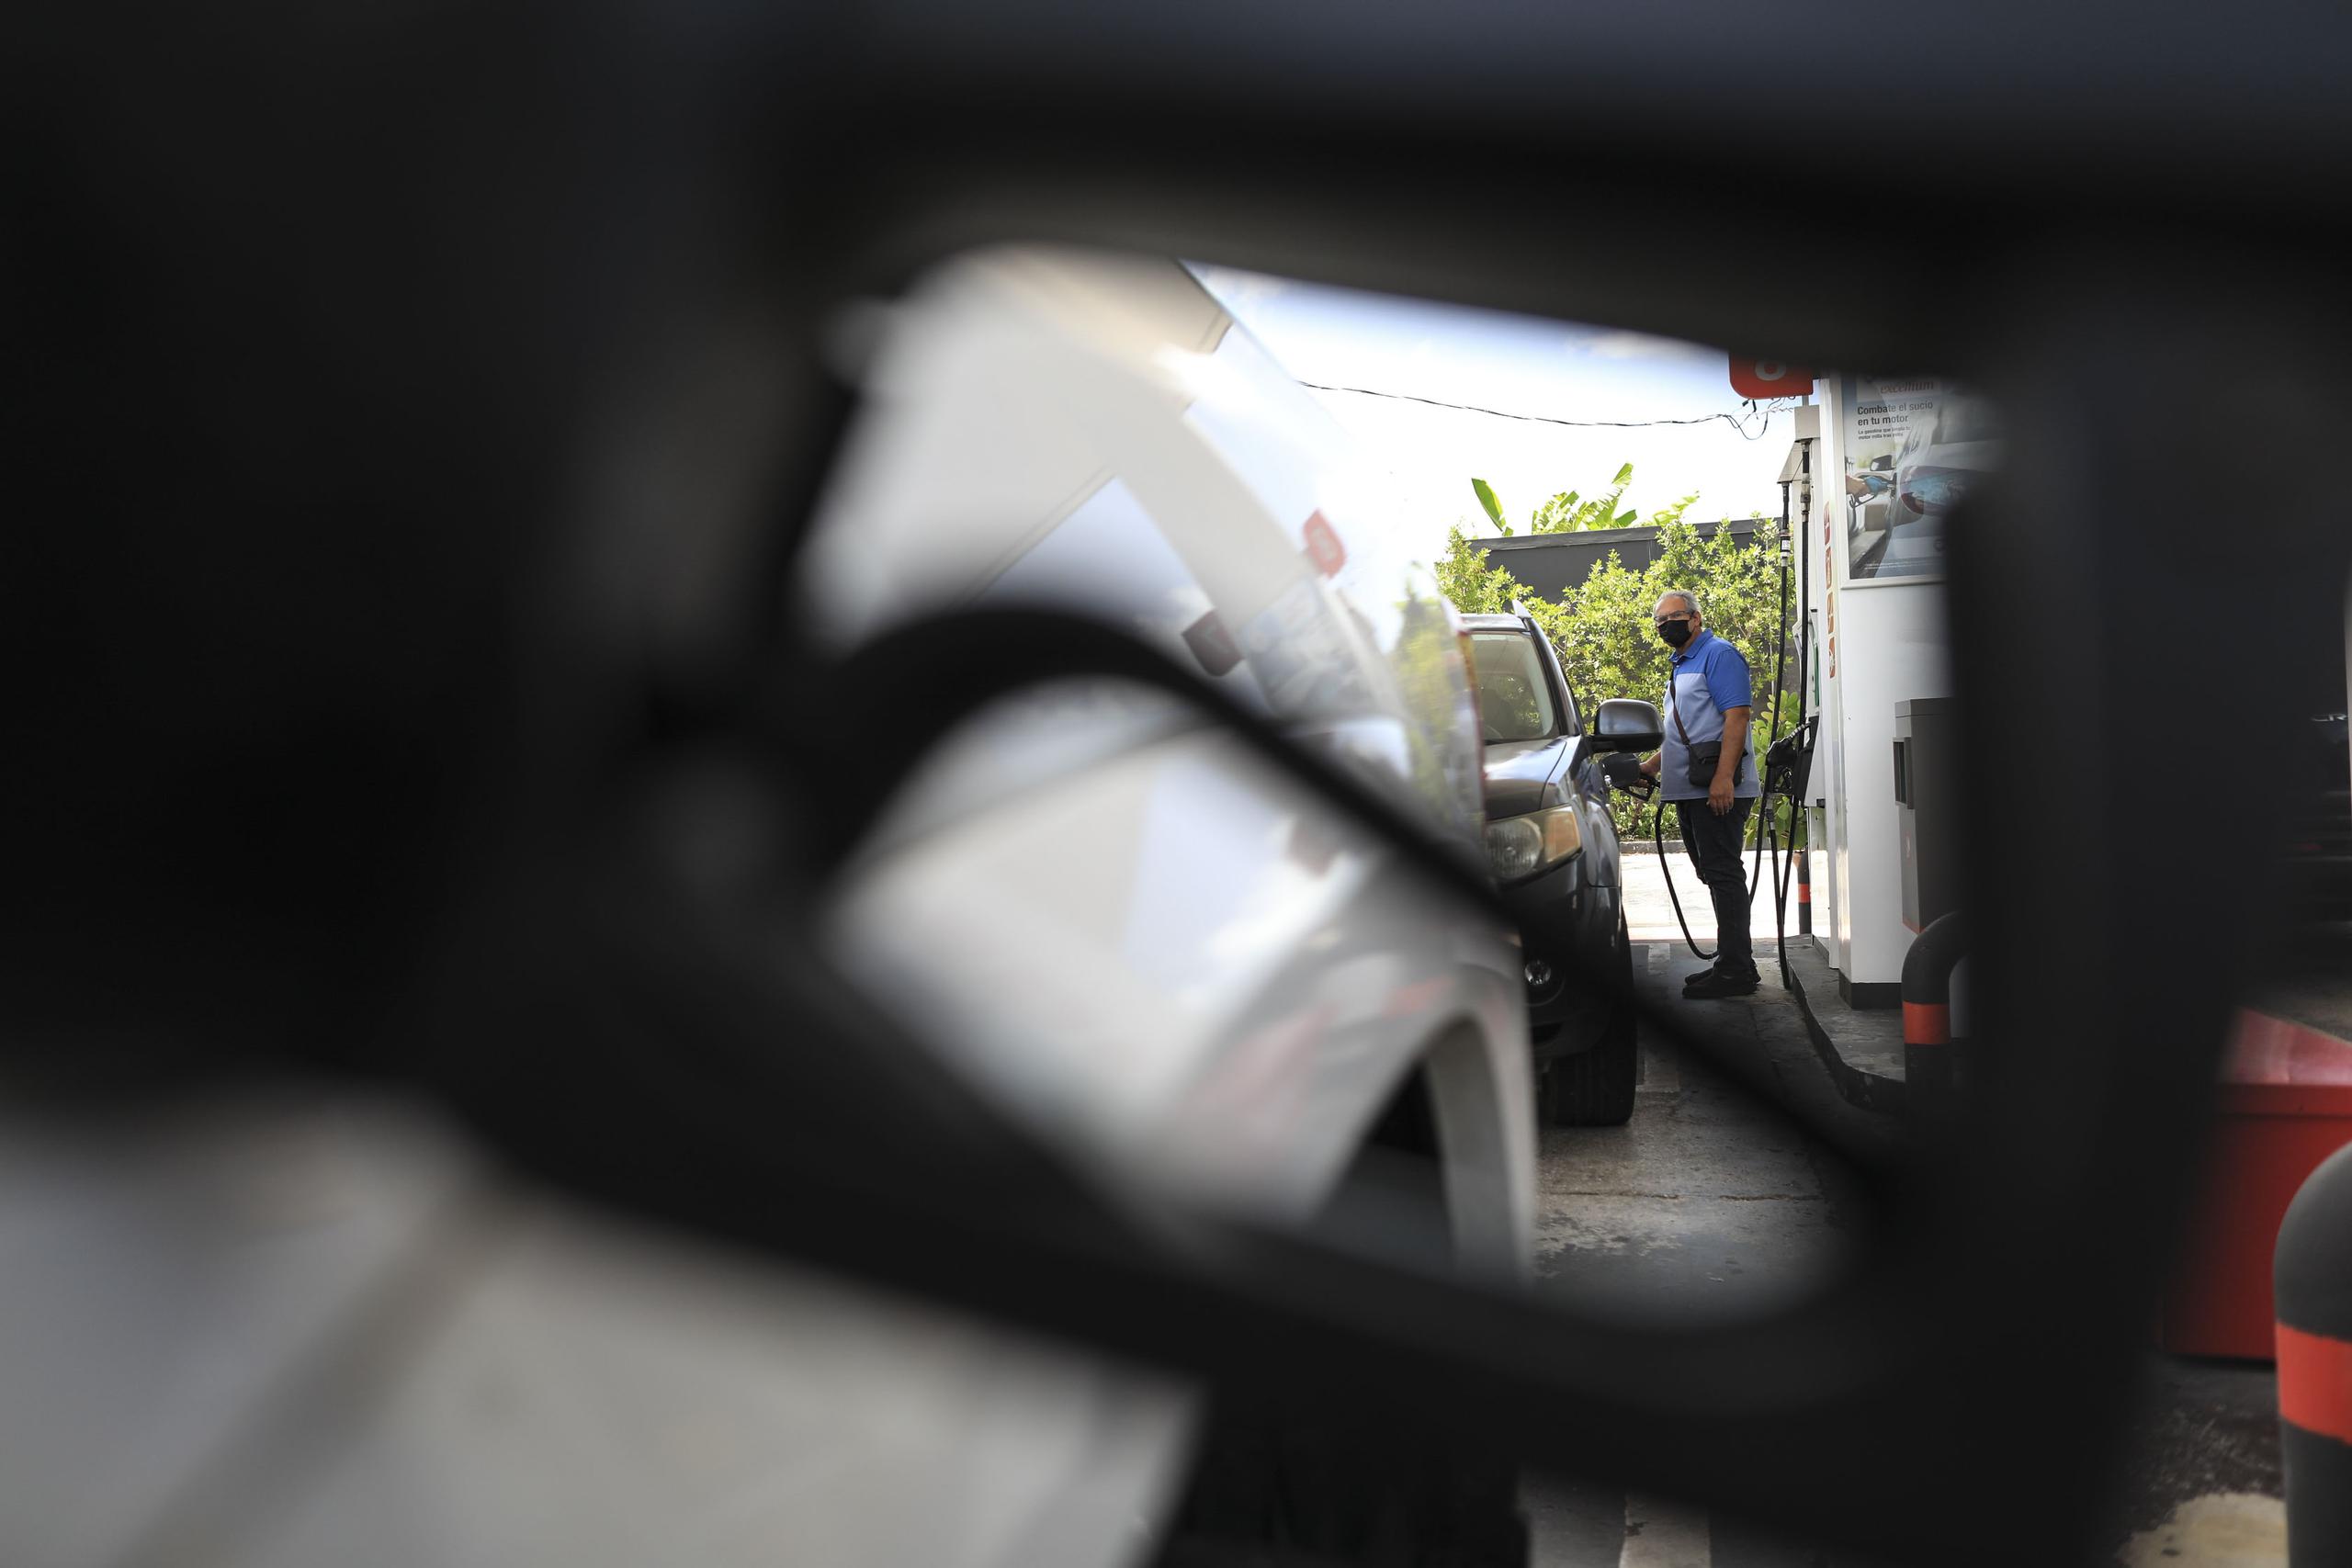 Los detallistas de gasolina solo podrán generar una ganancia de entre 20 a 25 centavos, según la nueva orden del DACO.